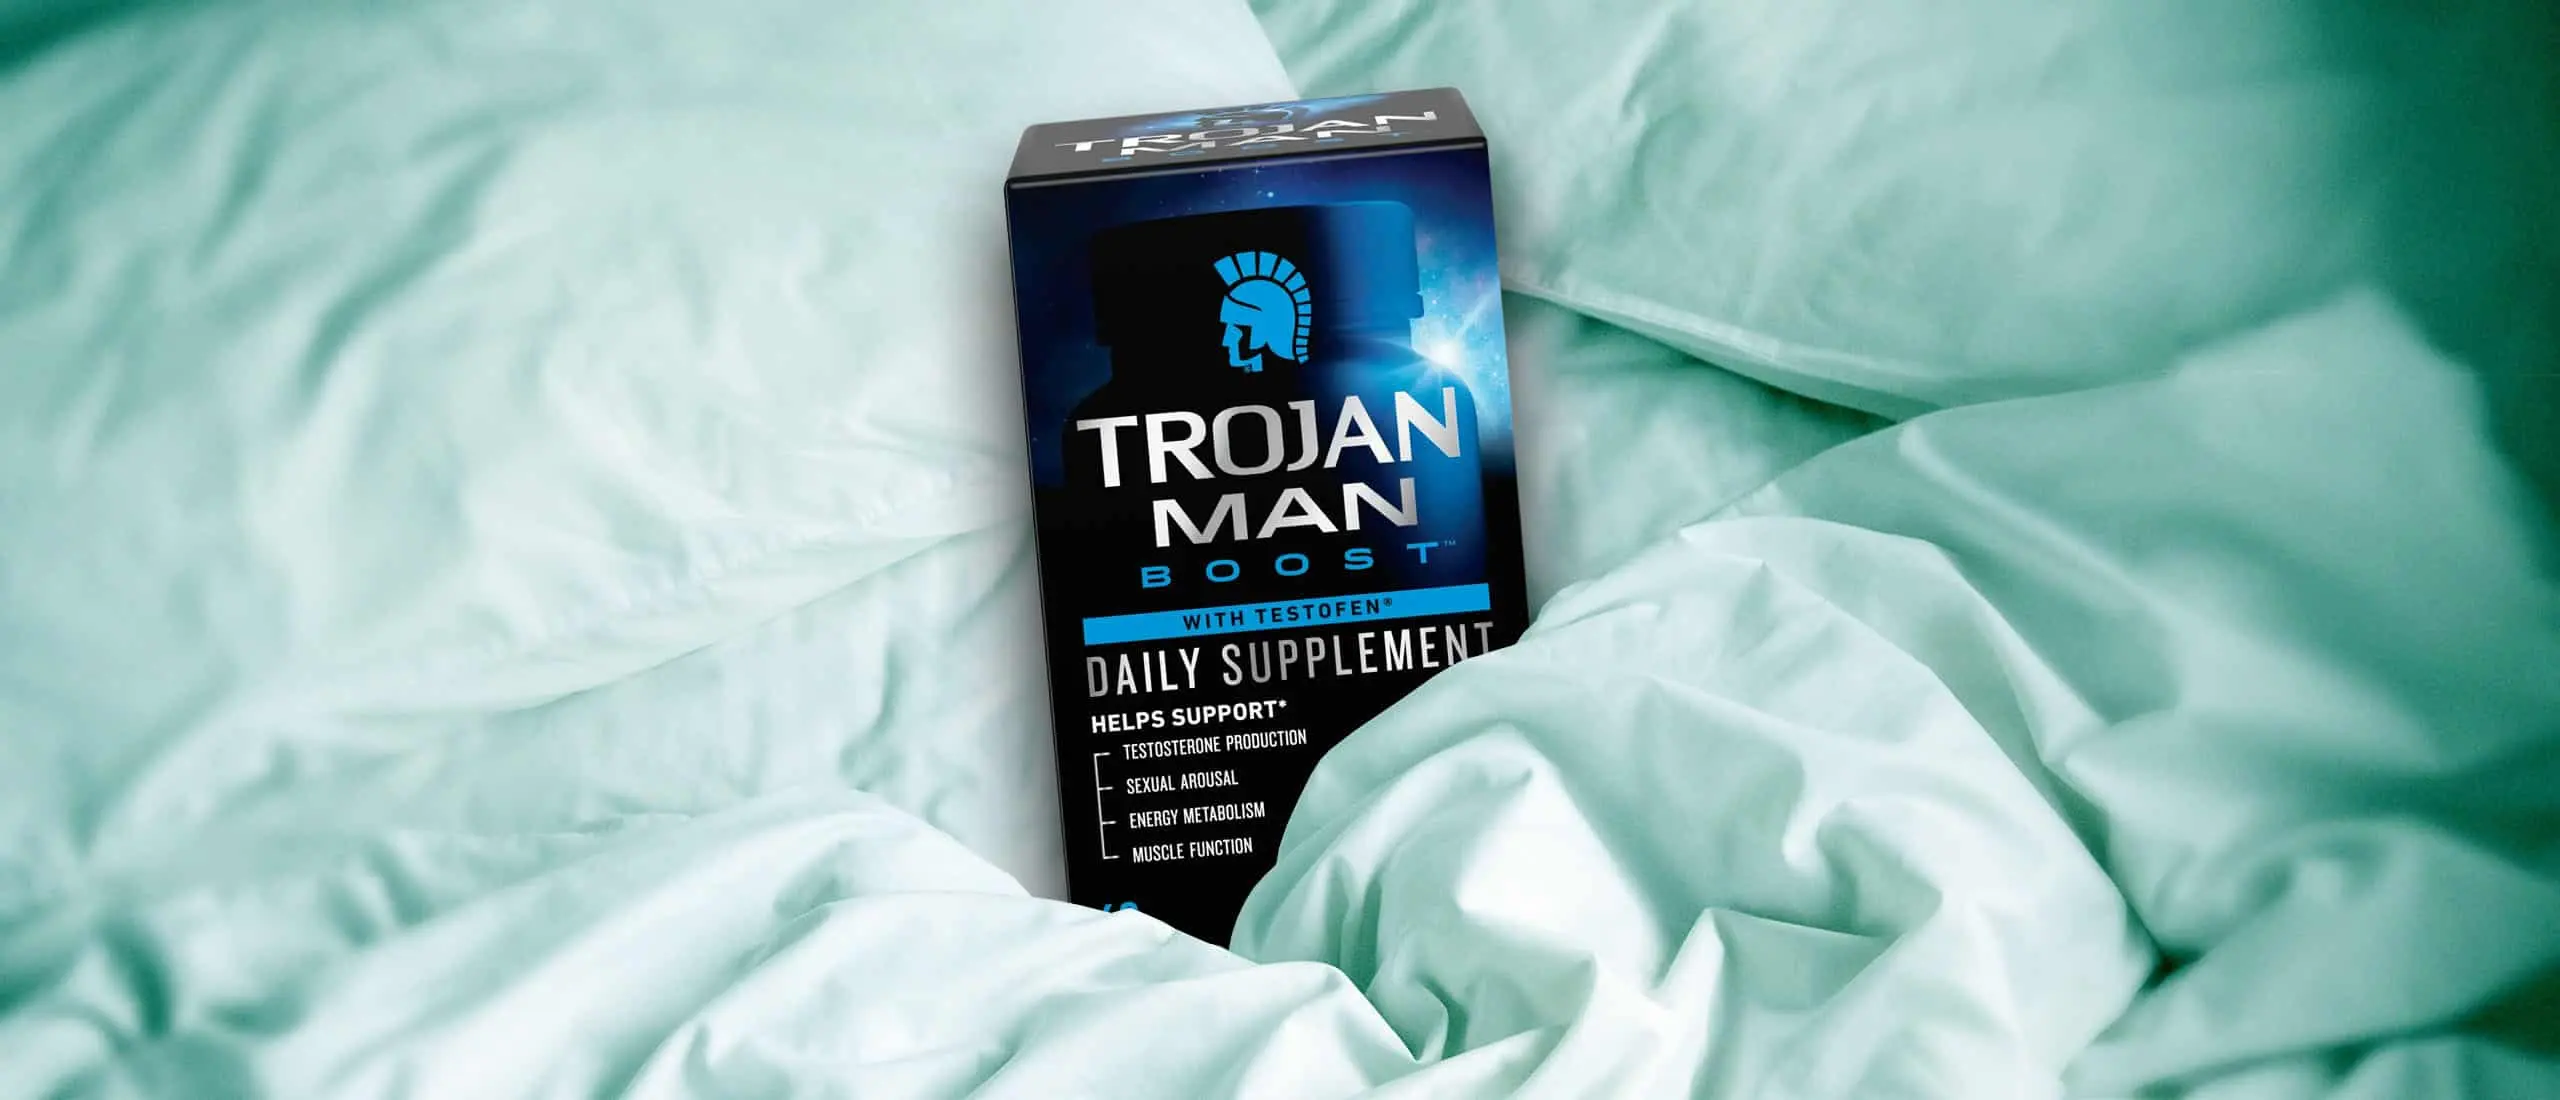 Trojan Man boost in a bed